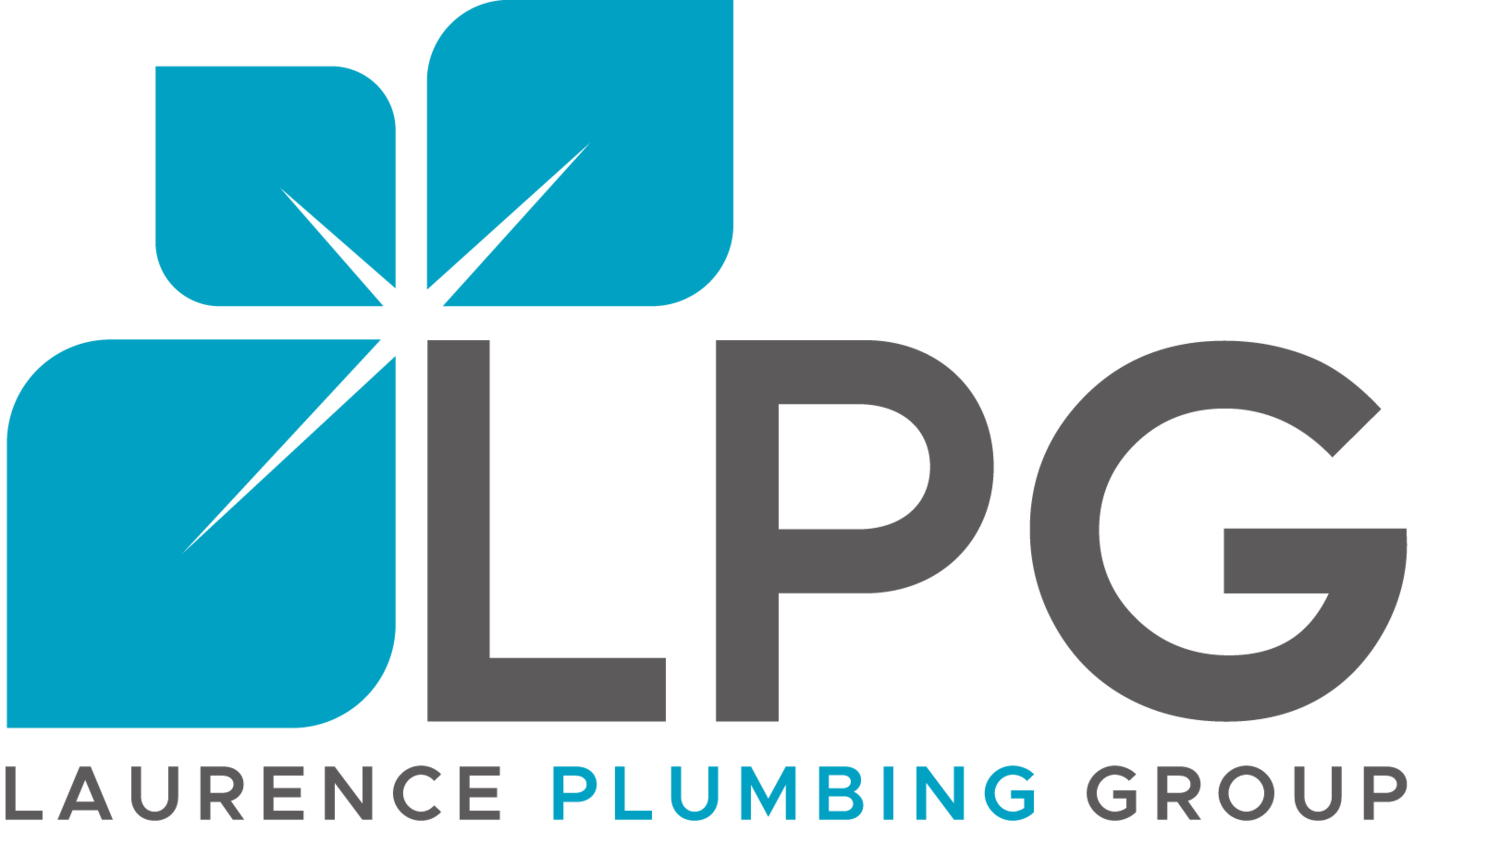 Laurence Plumbing Group